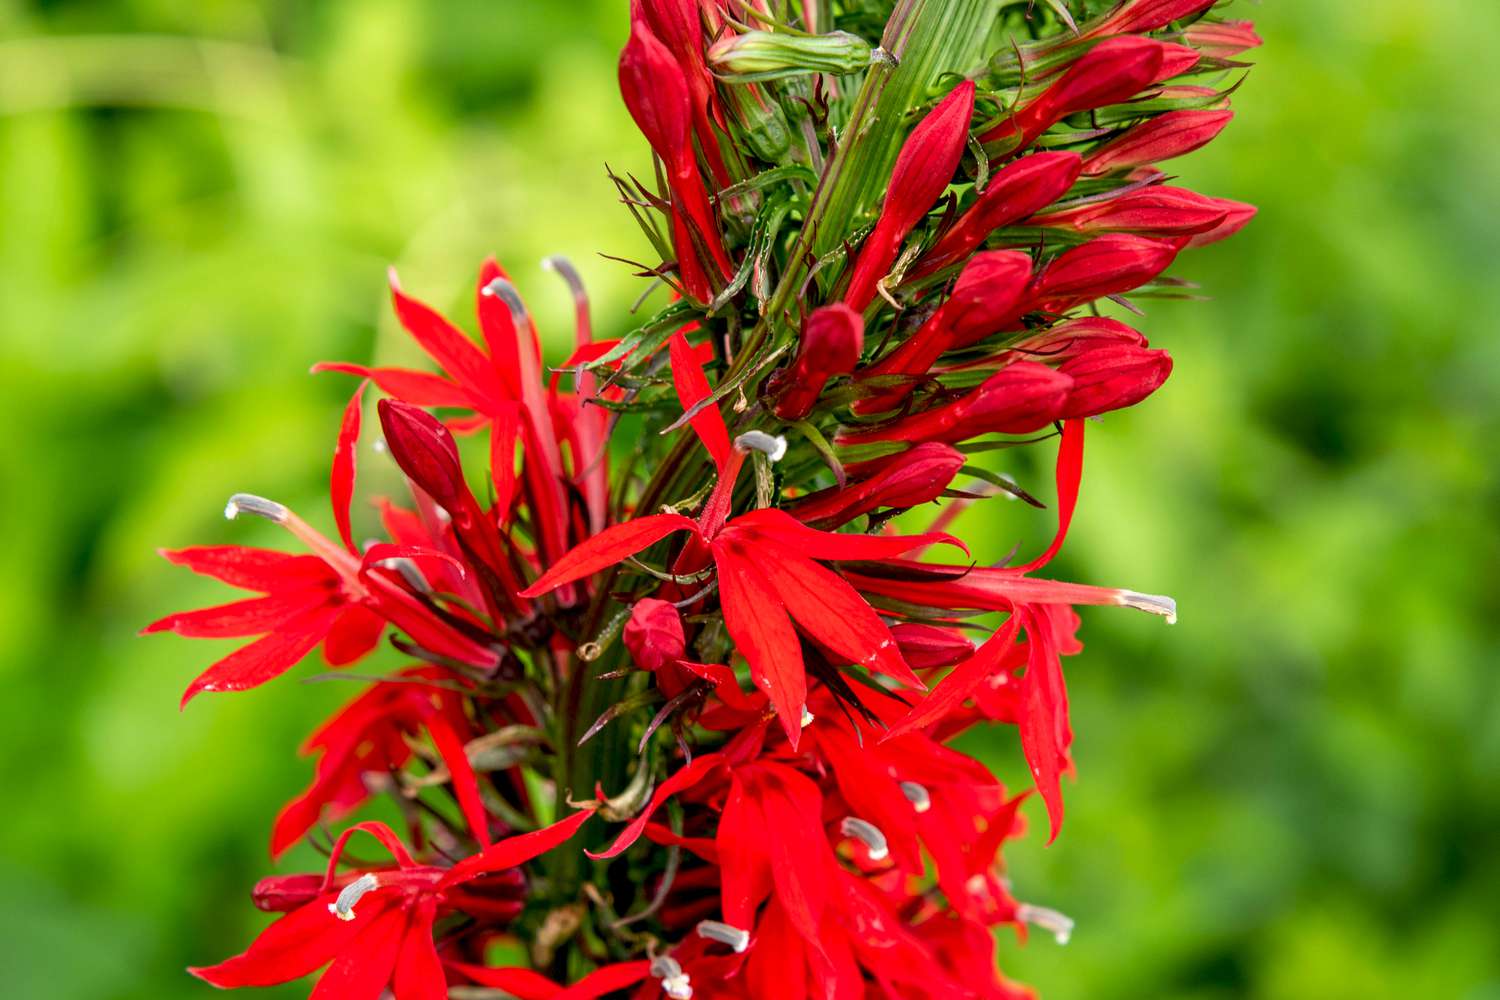 Kardinalsblütenzweig mit leuchtend roten Blütenblättern und Knospen in Nahaufnahme